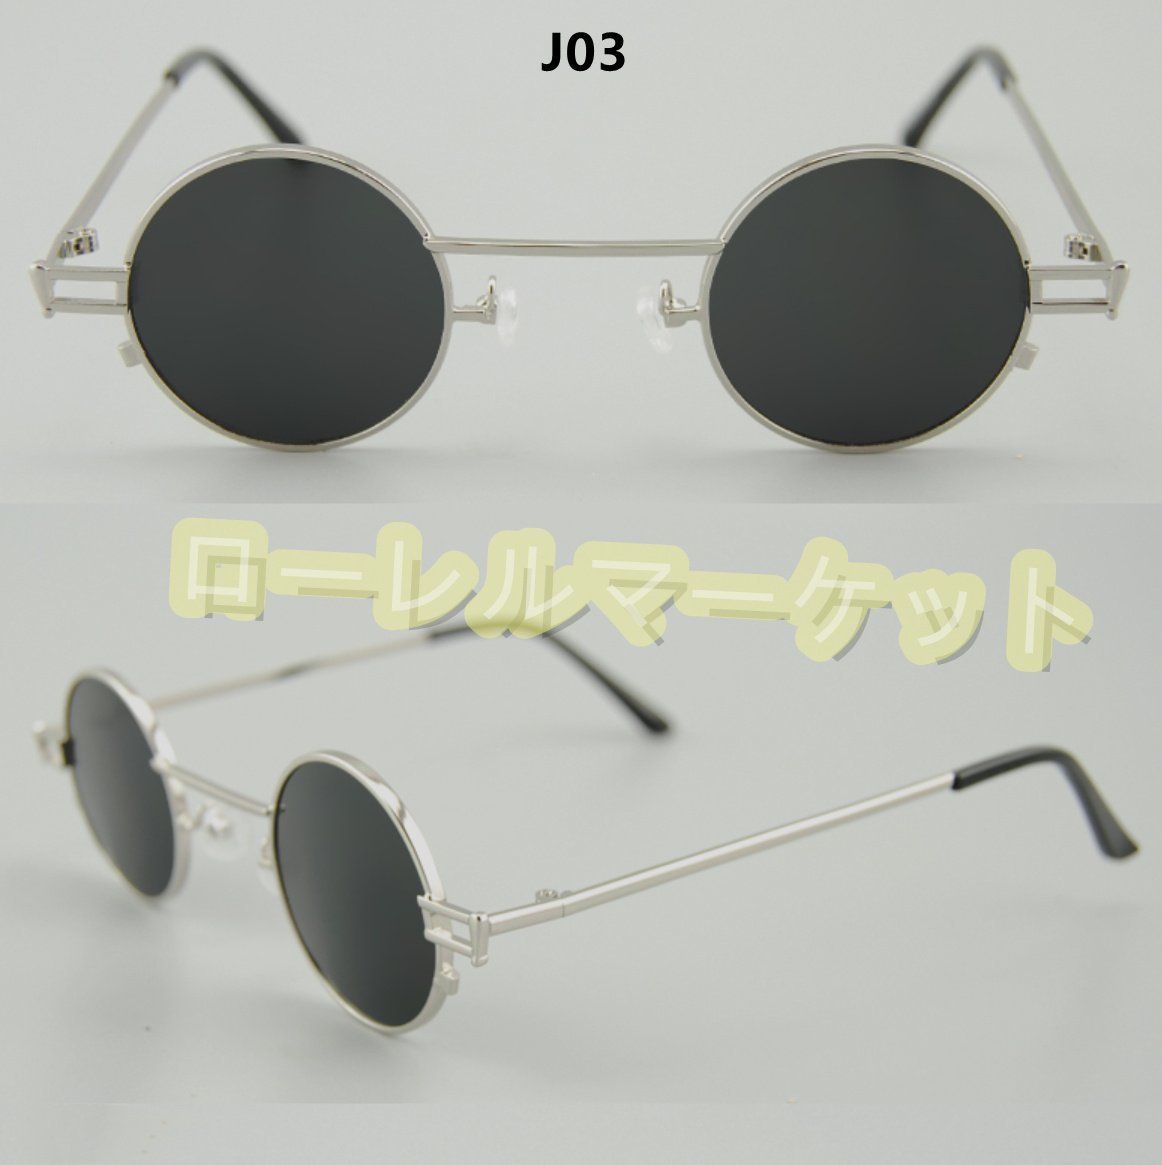 新品ガッコいい復旧型円形フレーム眼鏡 メガネフレーム 合金素材 ファッション カラー選択可YJ40_画像4